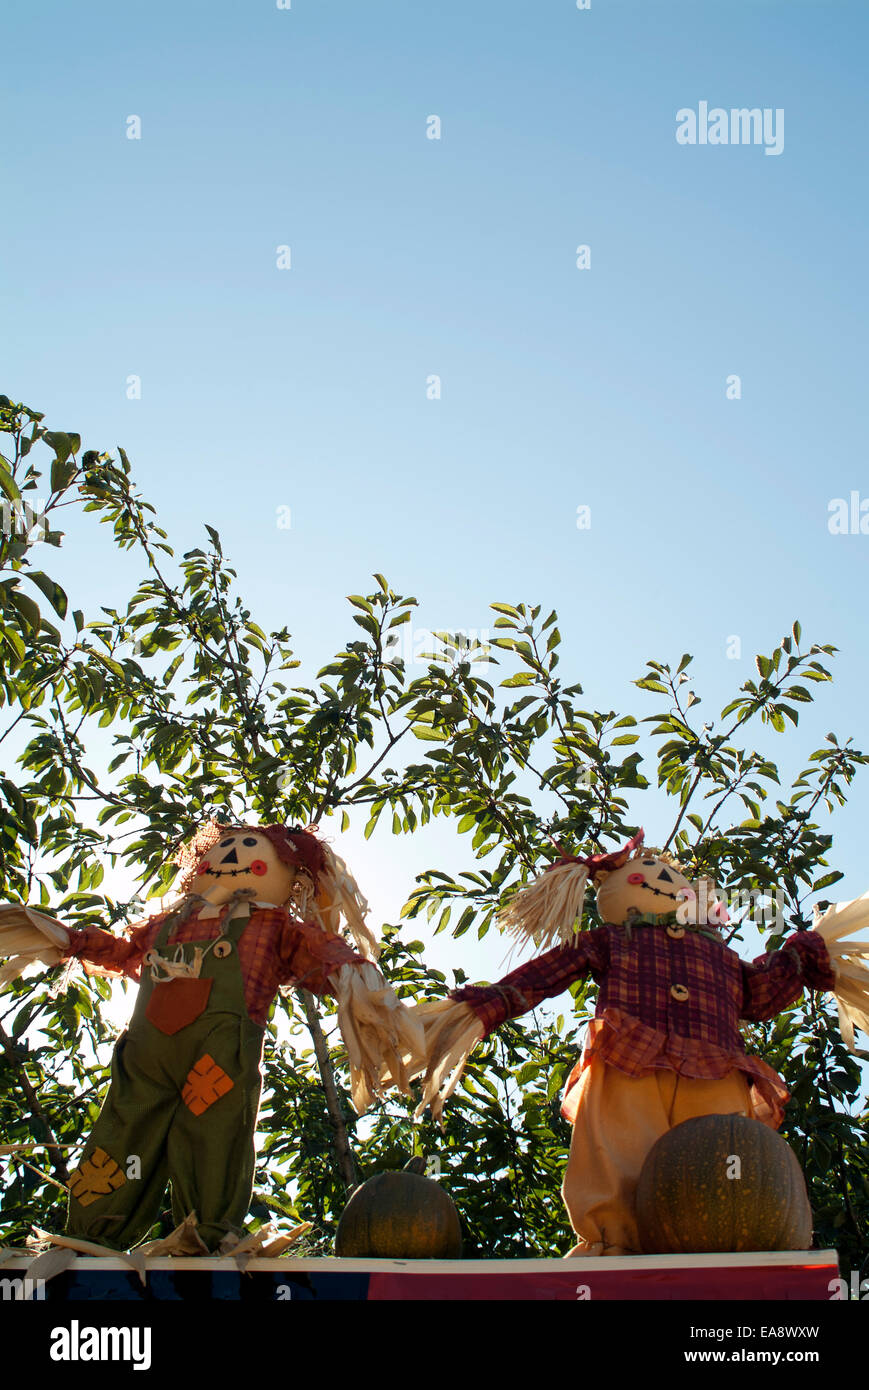 zwei Halloween-Stroh Puppen-Dummys, die Hand in Hand vor einem grünen Busch Blau blickt sonnigen Himmel Lächeln Spaß winken Kinder Sommer Stockfoto